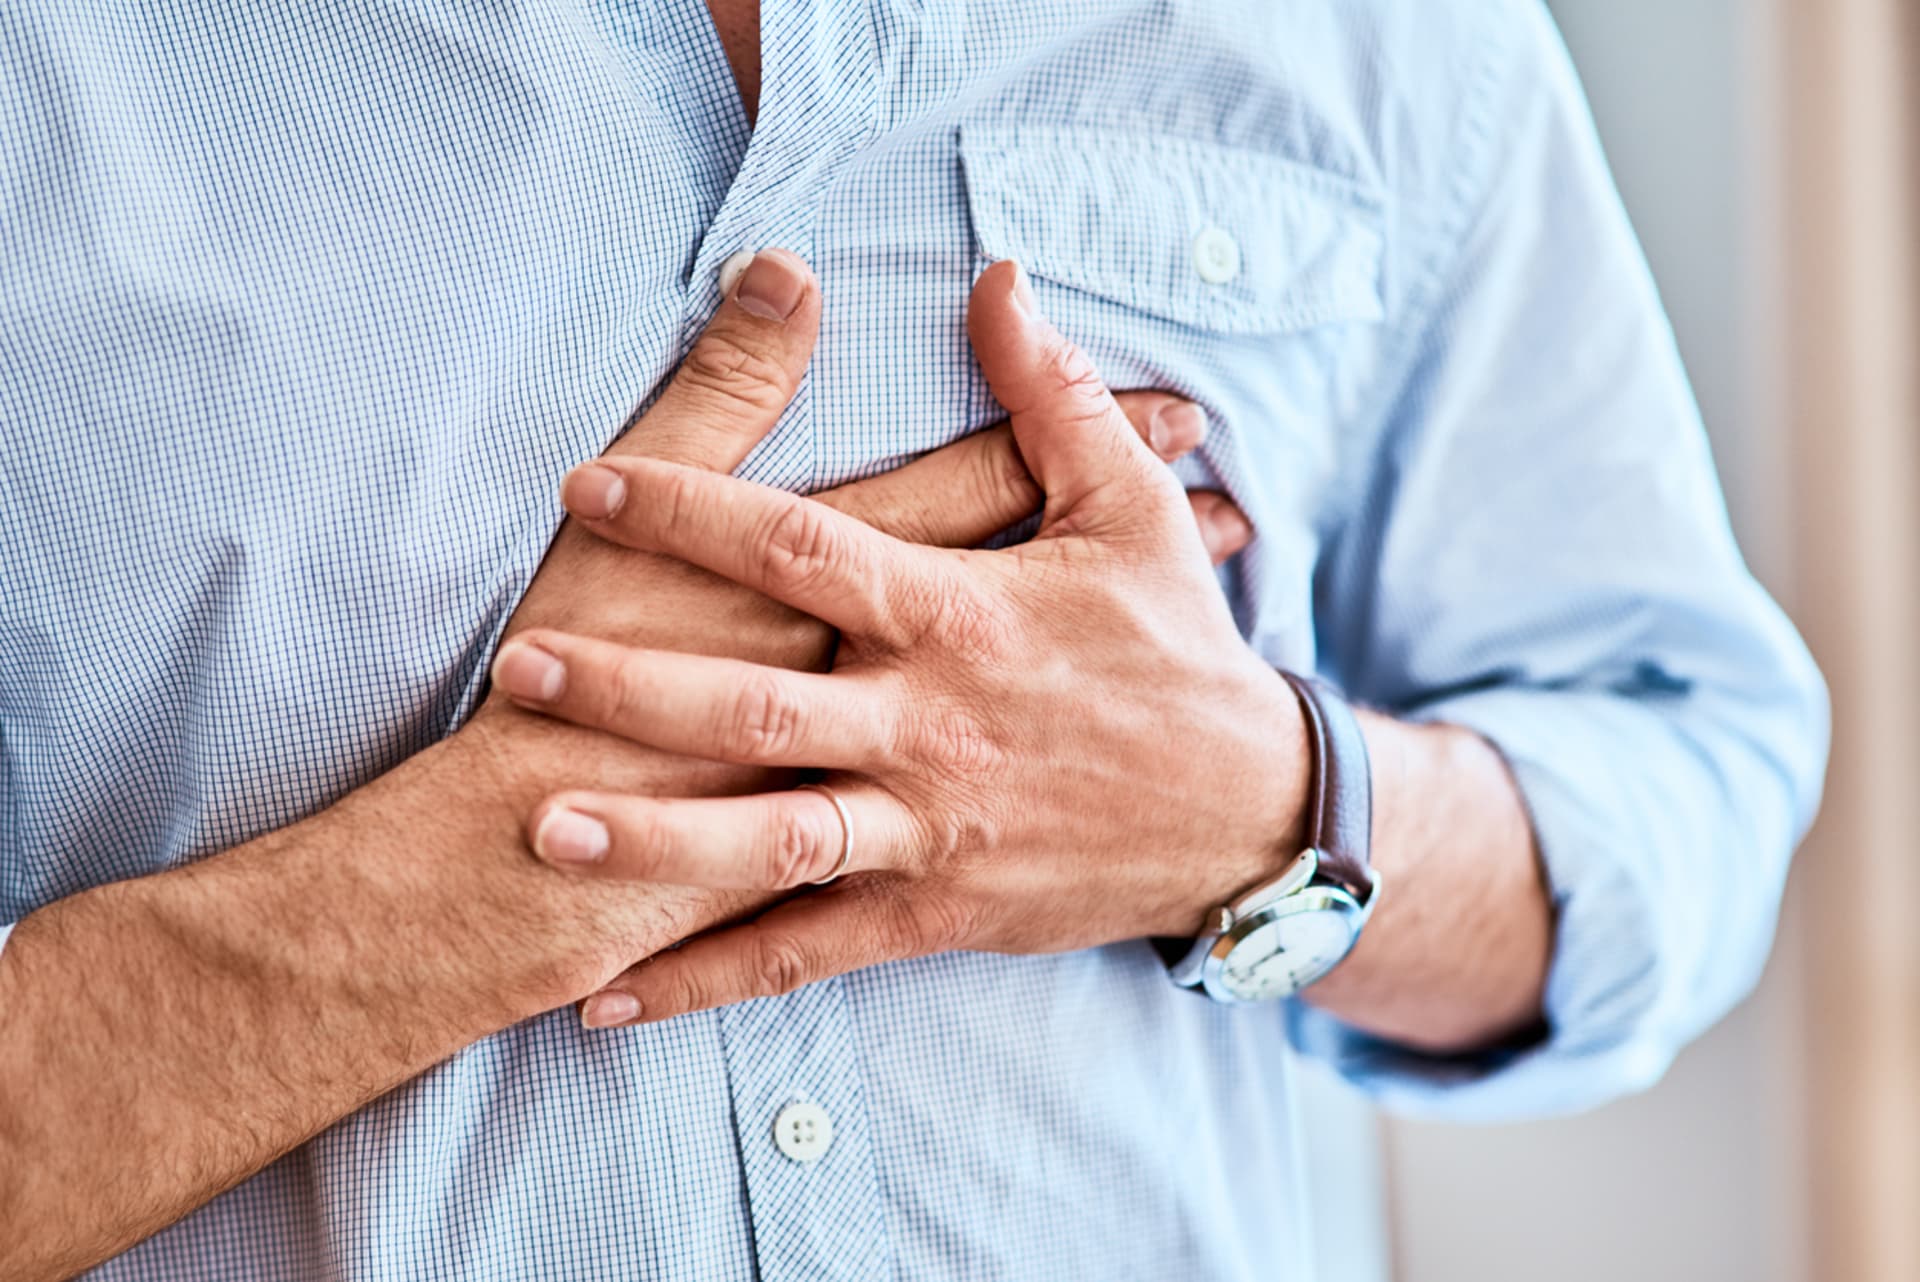 Pálení na hrudí a svíravý pocit u srdce mohou také svědčit o tom, že vaše hladina cholesterolu zasluhuje pozornost